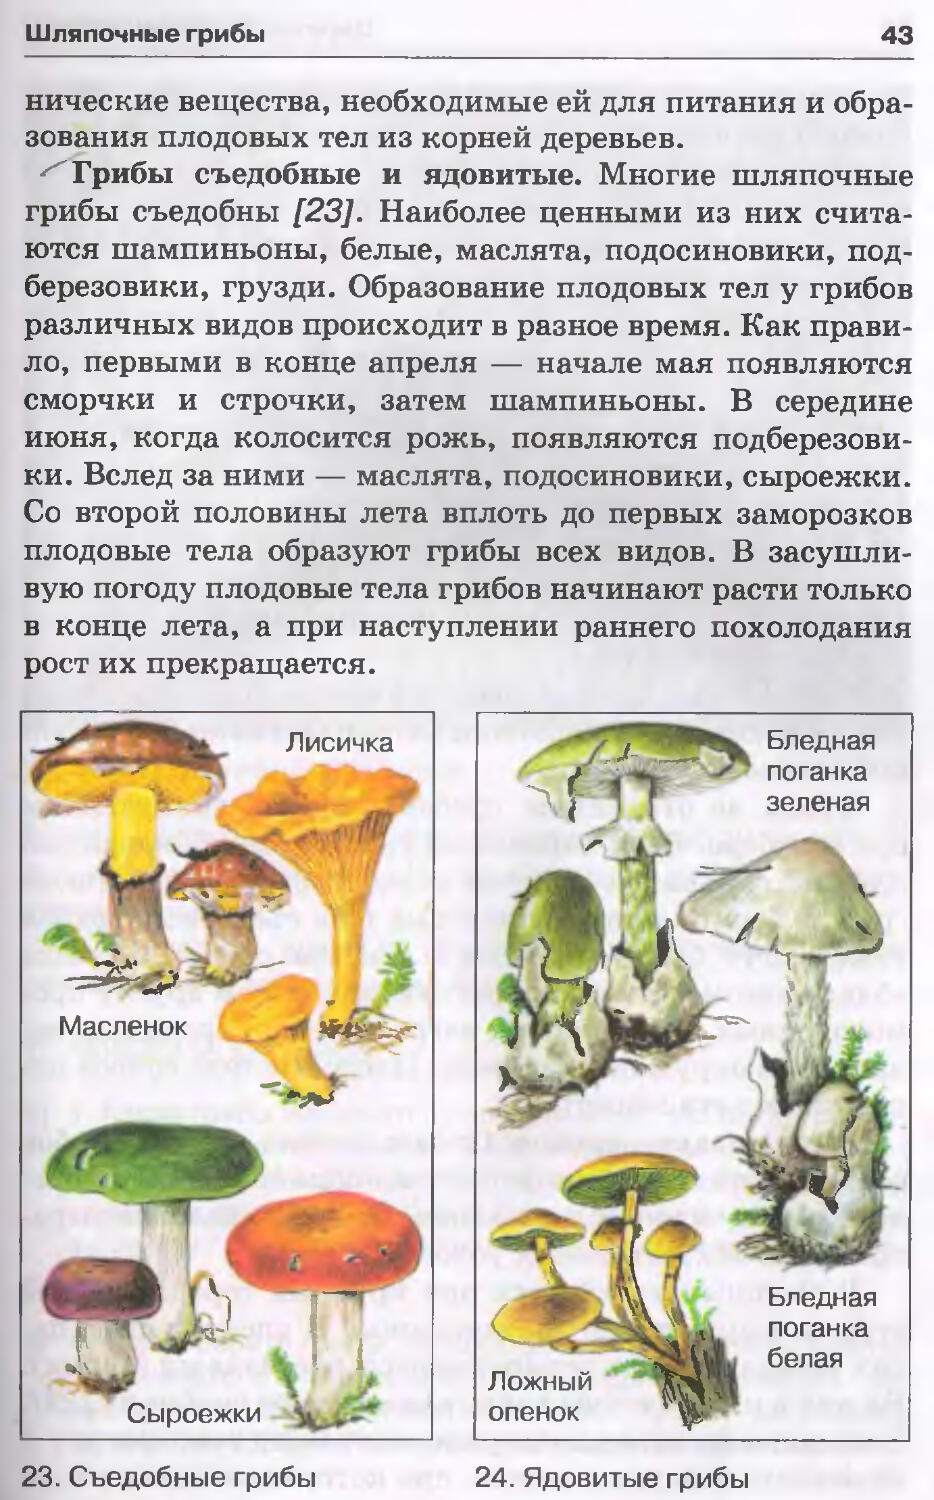 Ядовитые грибы подписаны